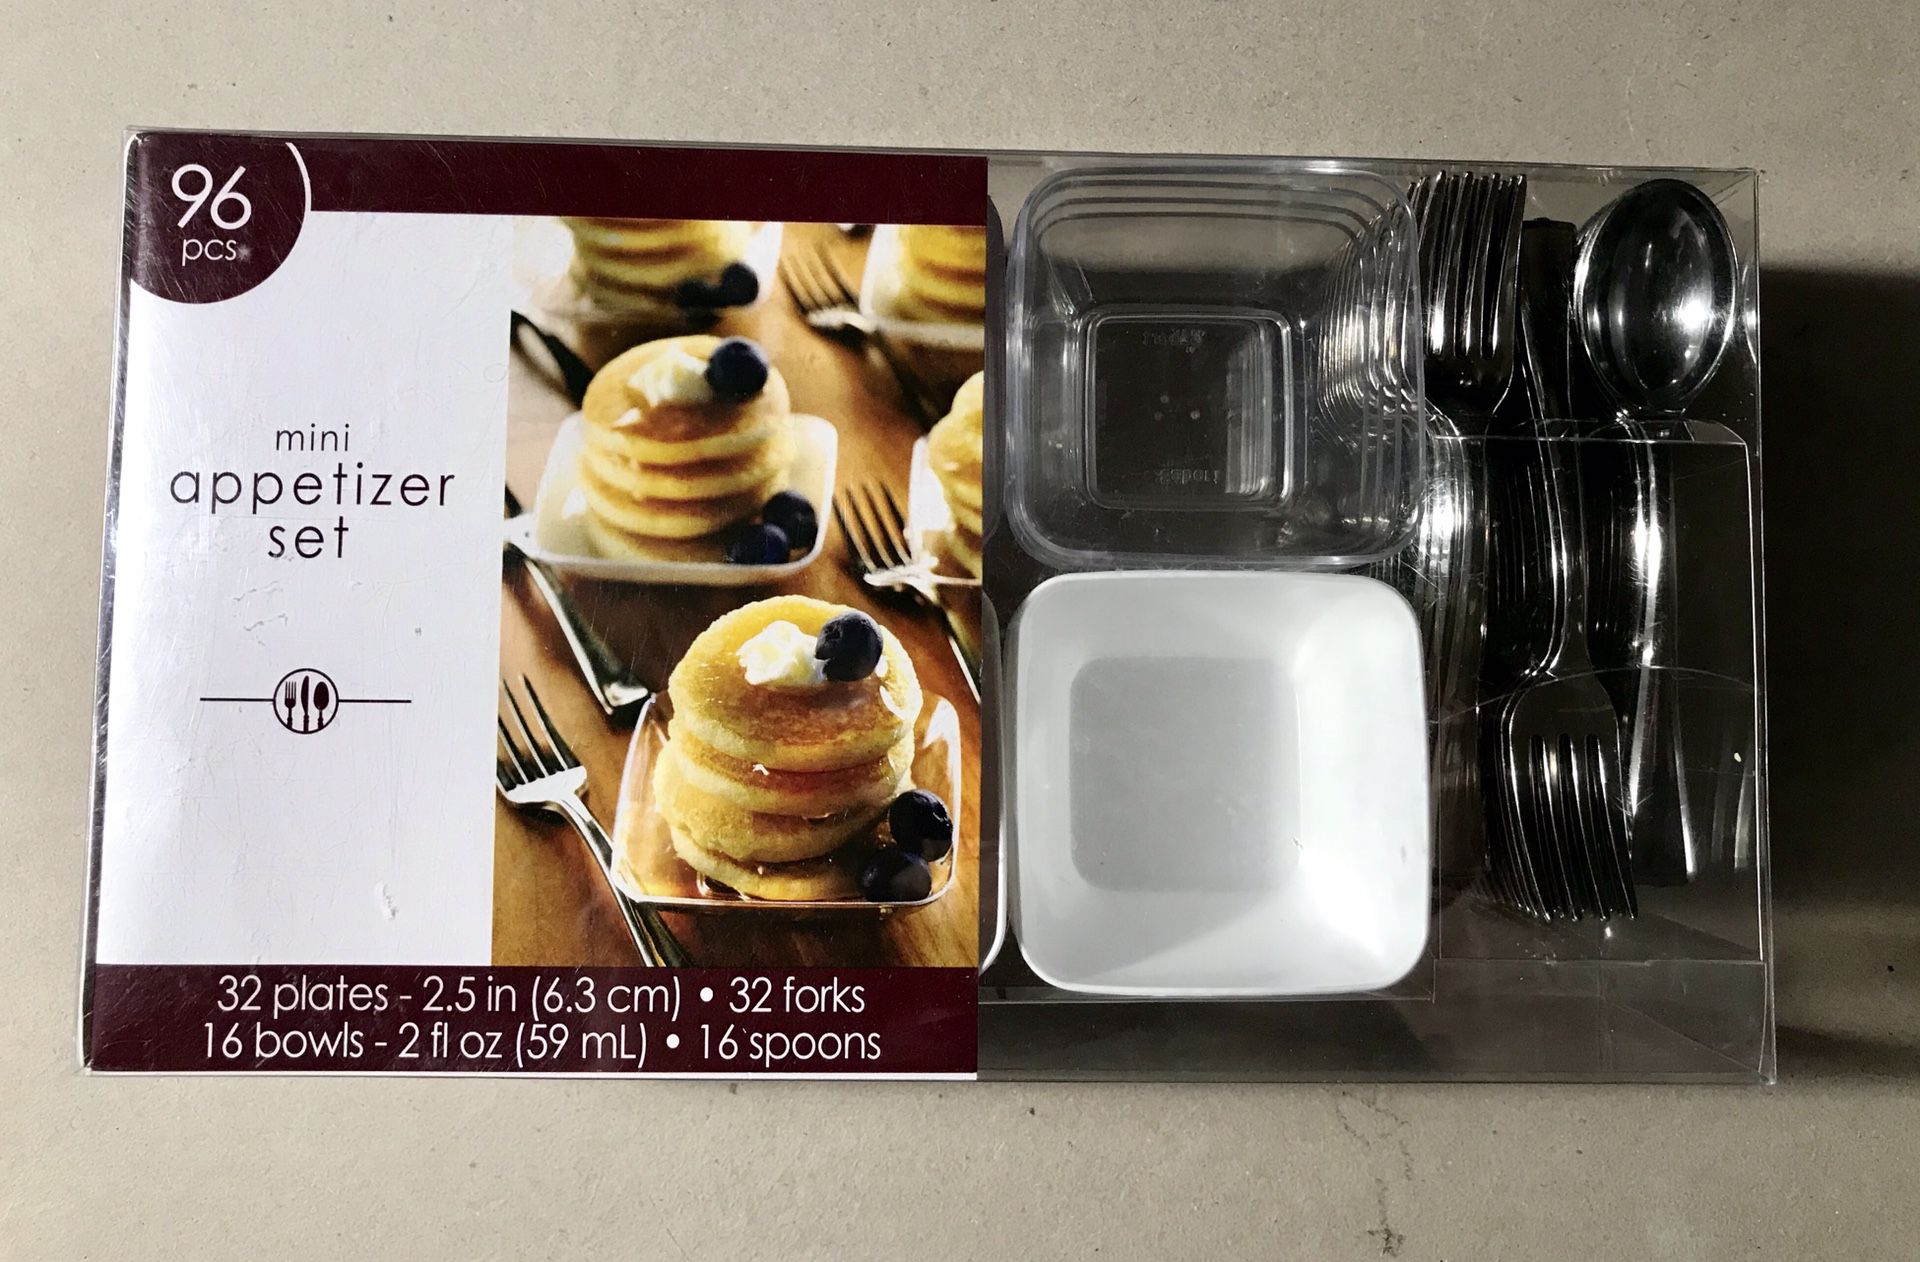 Mini appetizer set- 96 pieces.